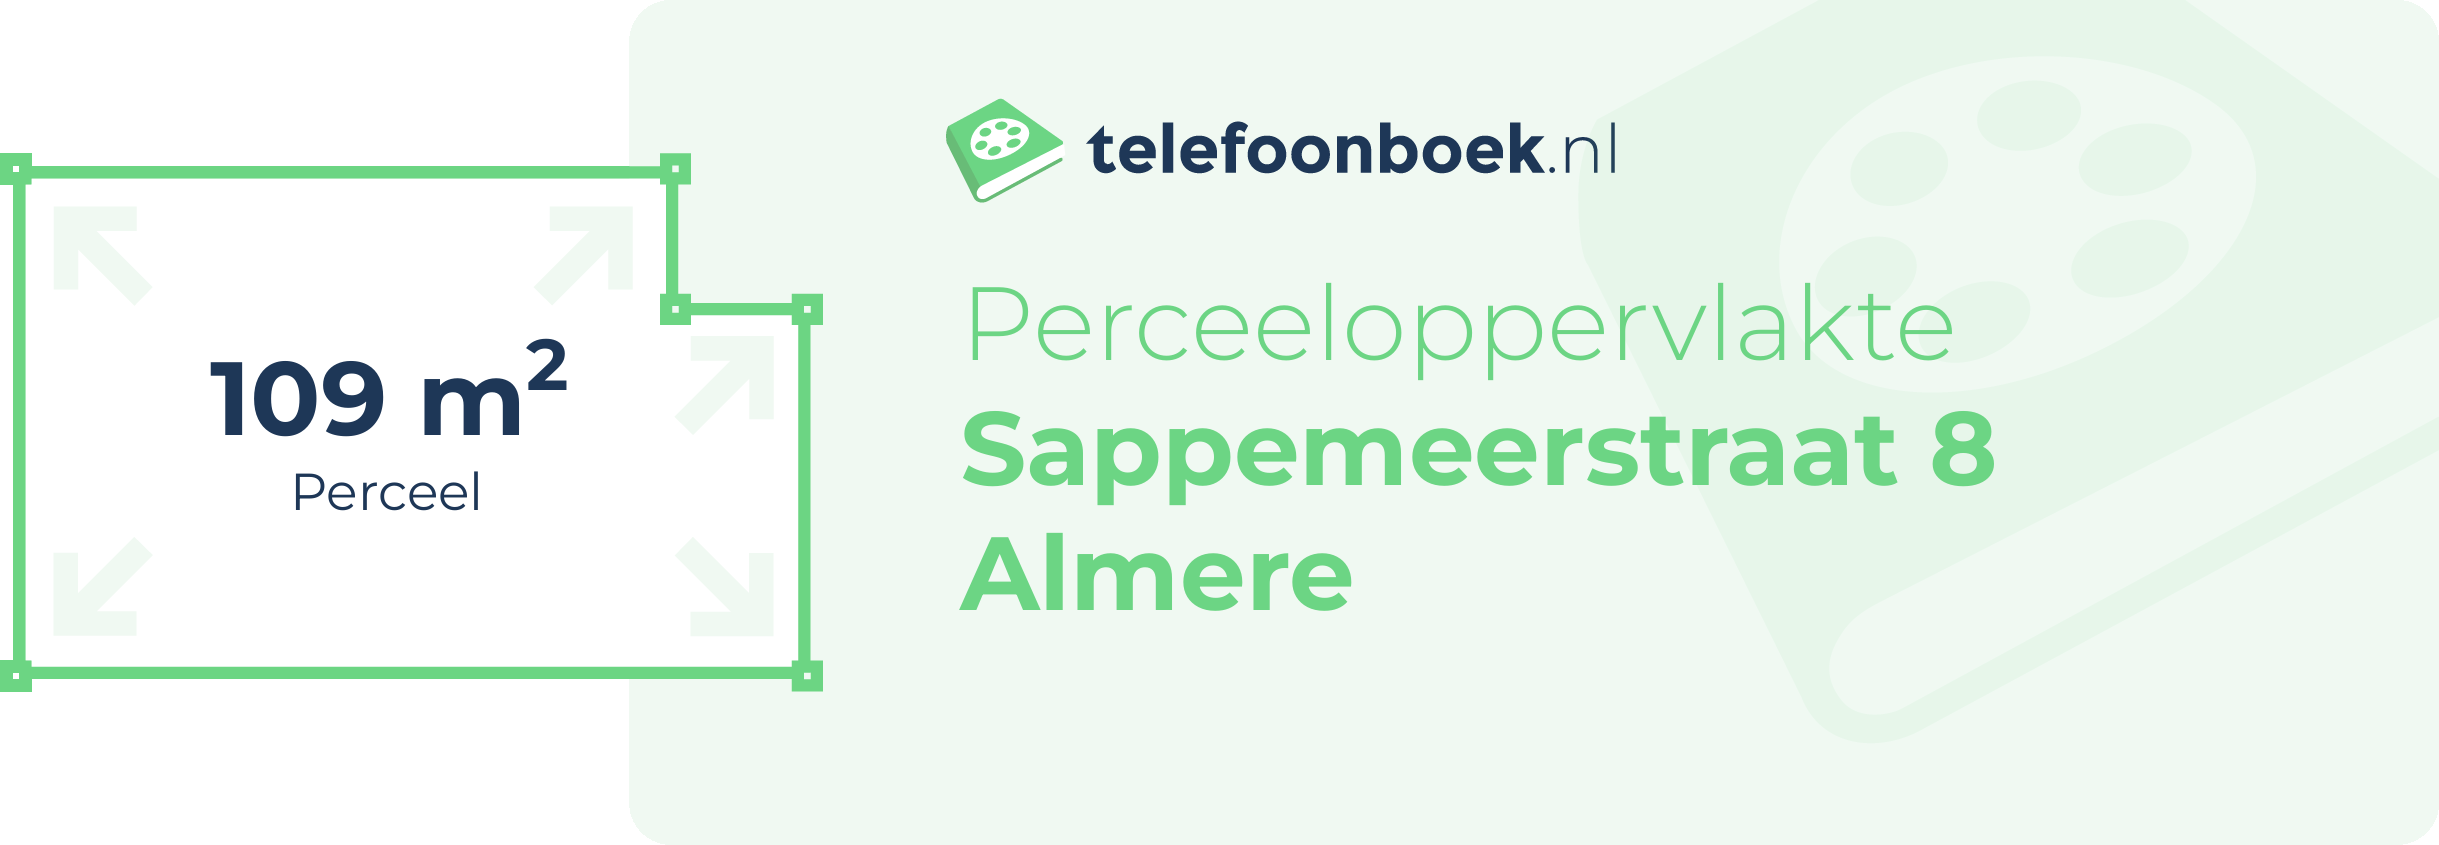 Perceeloppervlakte Sappemeerstraat 8 Almere